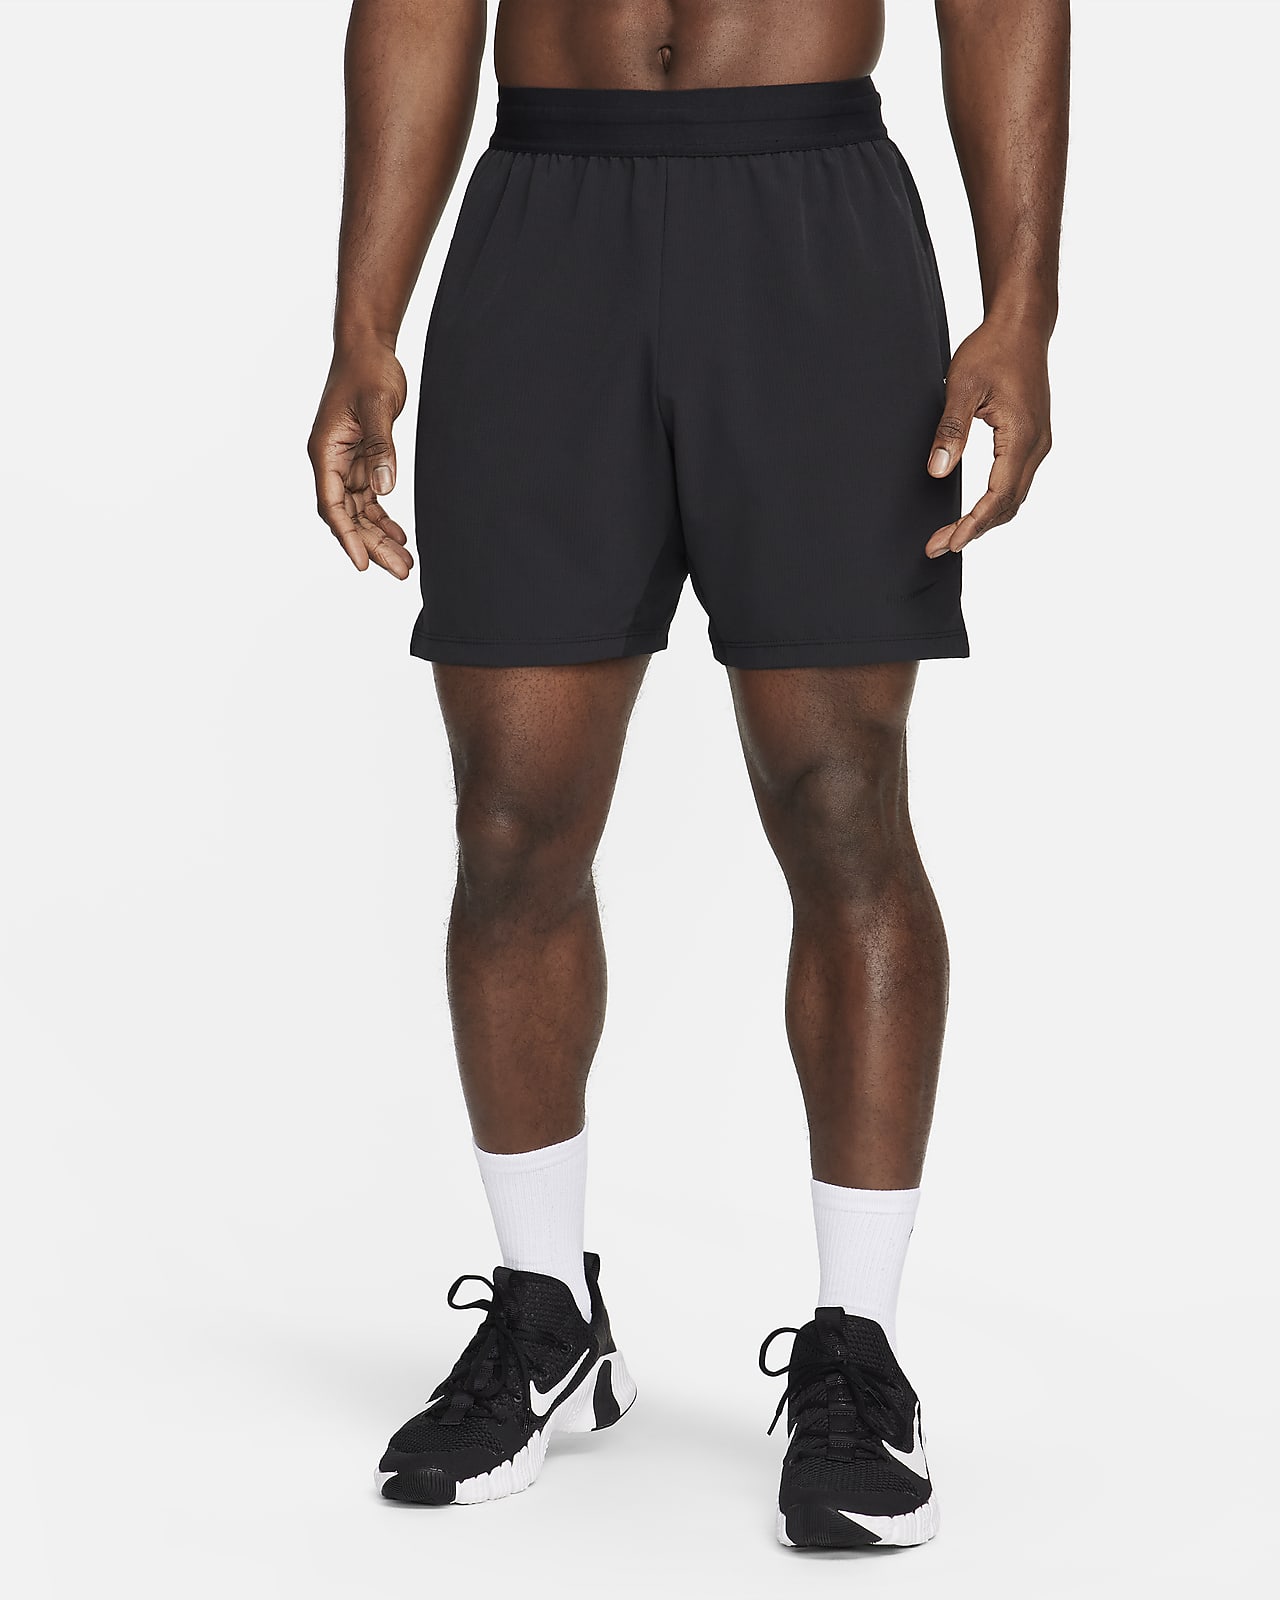 Męskie spodenki do fitnessu bez podszewki 18 cm Dri-FIT Nike Flex Rep 4.0